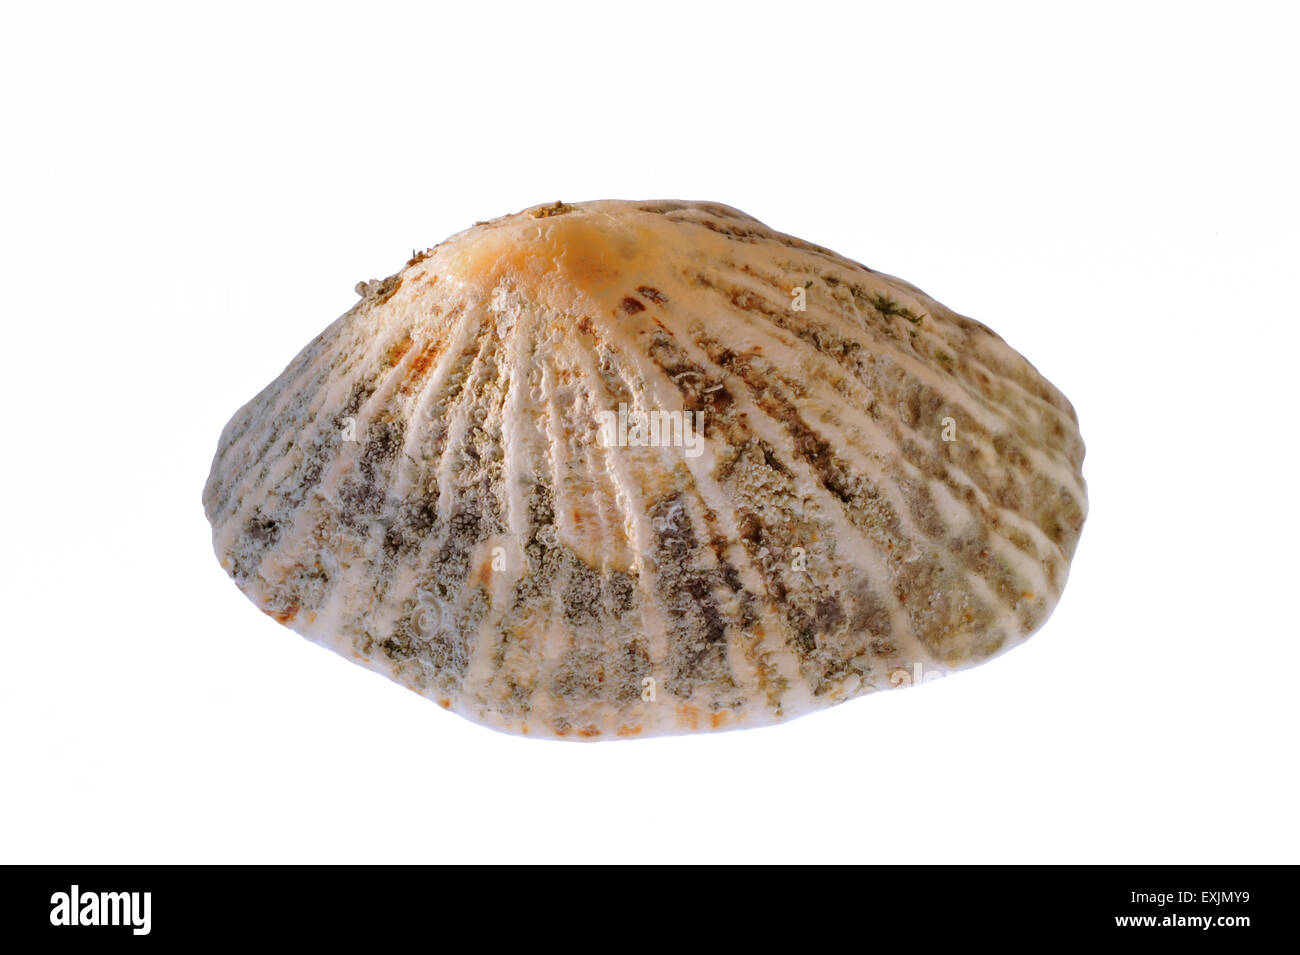 Common limpet / common European limpet (Patella vulgata) shell on white background Stock Photo